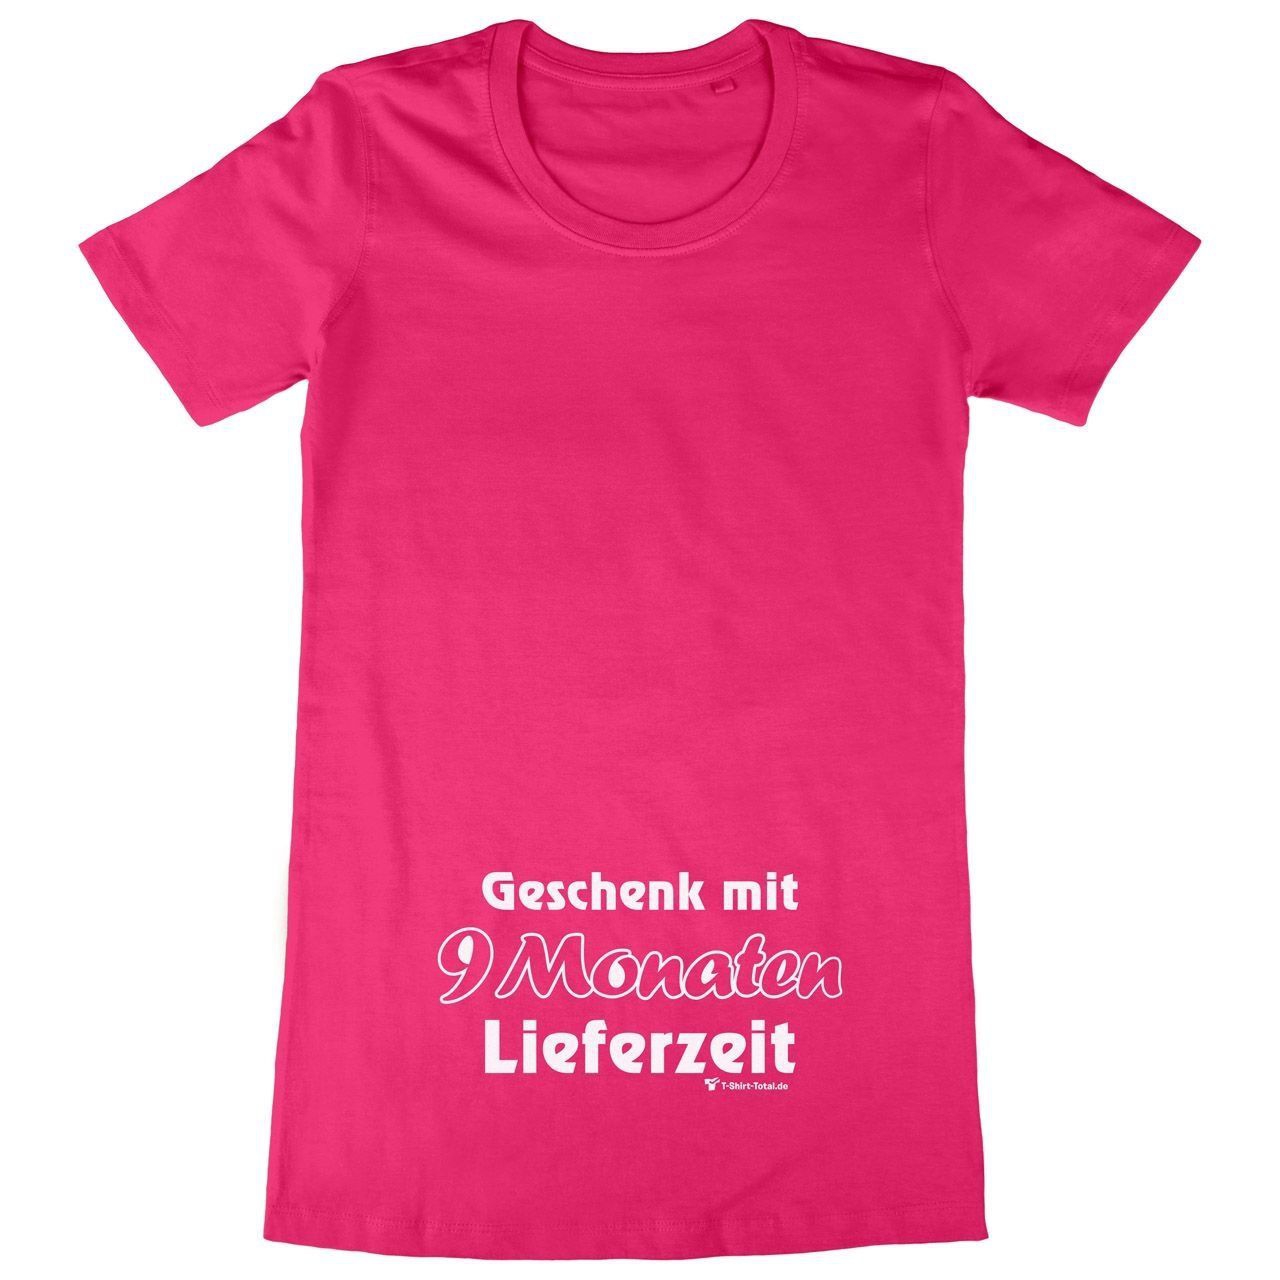 9 Monate Lieferzeit Woman Long Shirt pink Extra Large